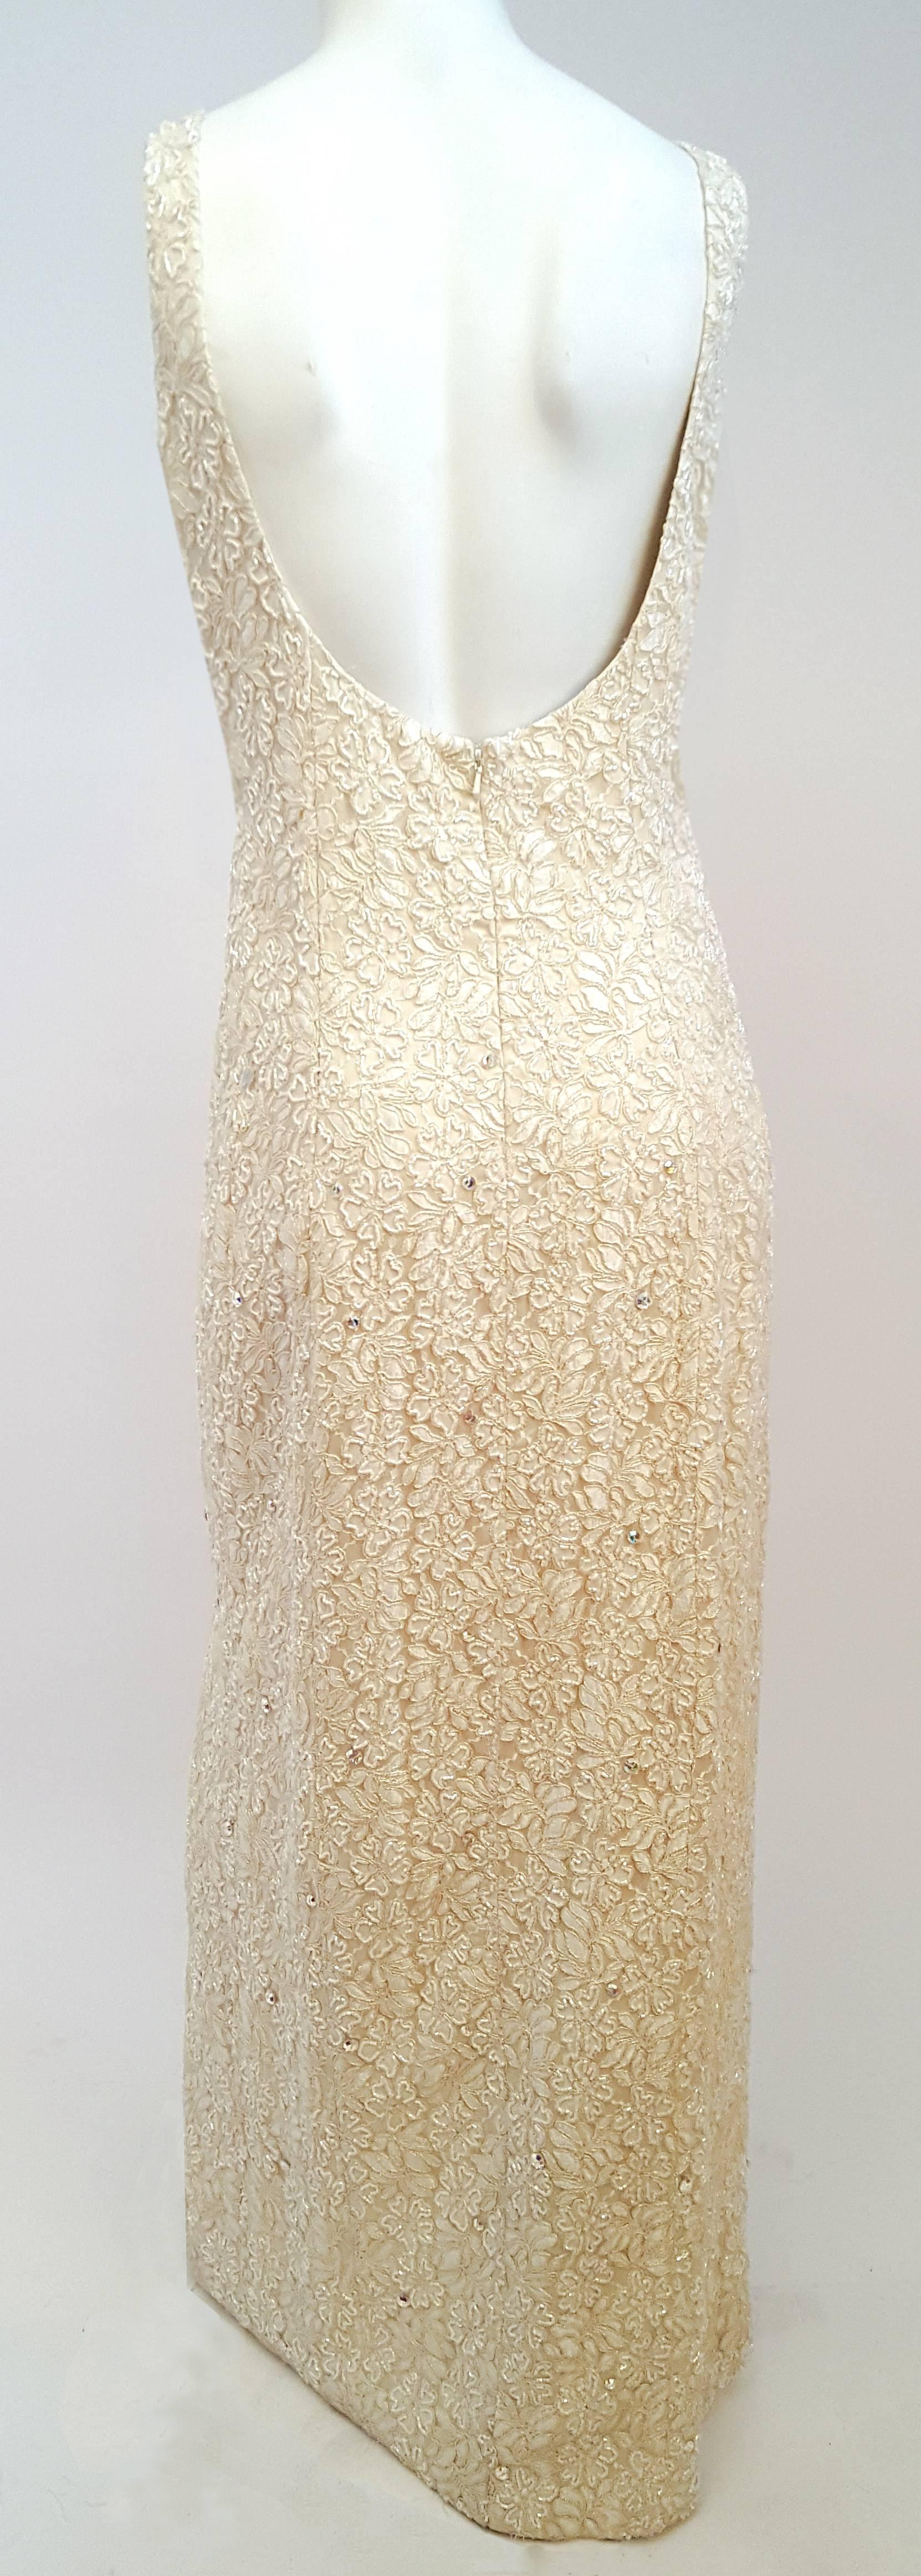 ensemble boléro et robe de soirée en perles ivoire des années 1990. La robe en dentelle est entièrement embellie par des perles et des strass aurora borealis. Fente latérale sur une jambe. Fermeture à glissière au dos.